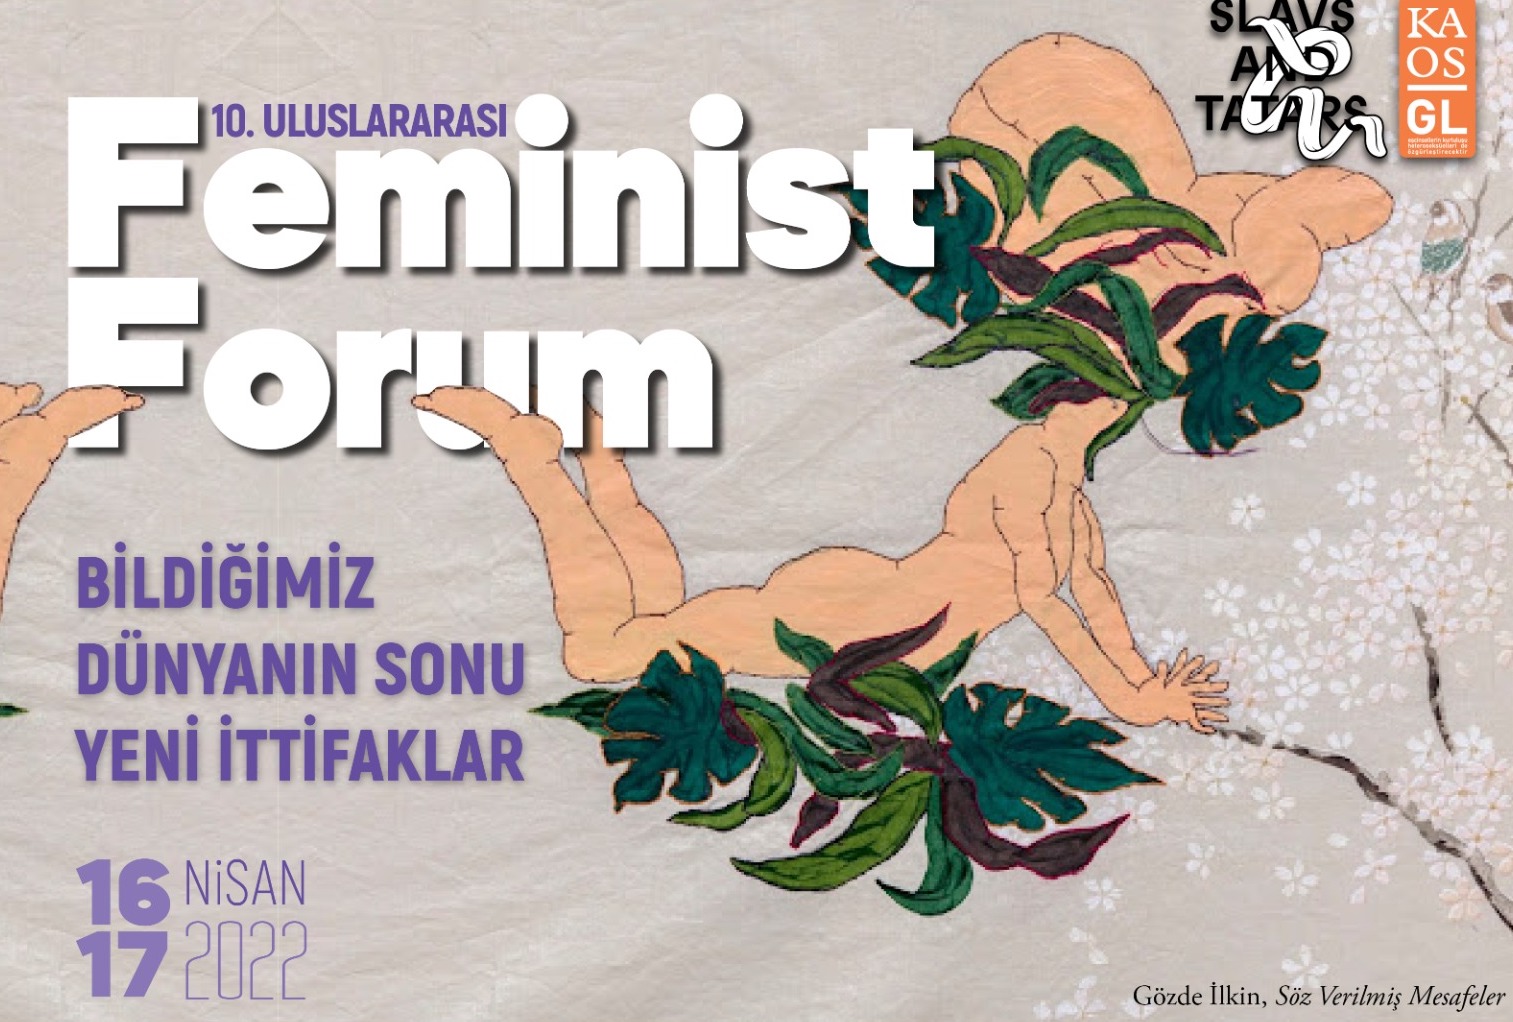 10. Uluslararası Feminist Forum’a kayıtlar başladı! Kaos GL - LGBTİ+ Haber Portalı